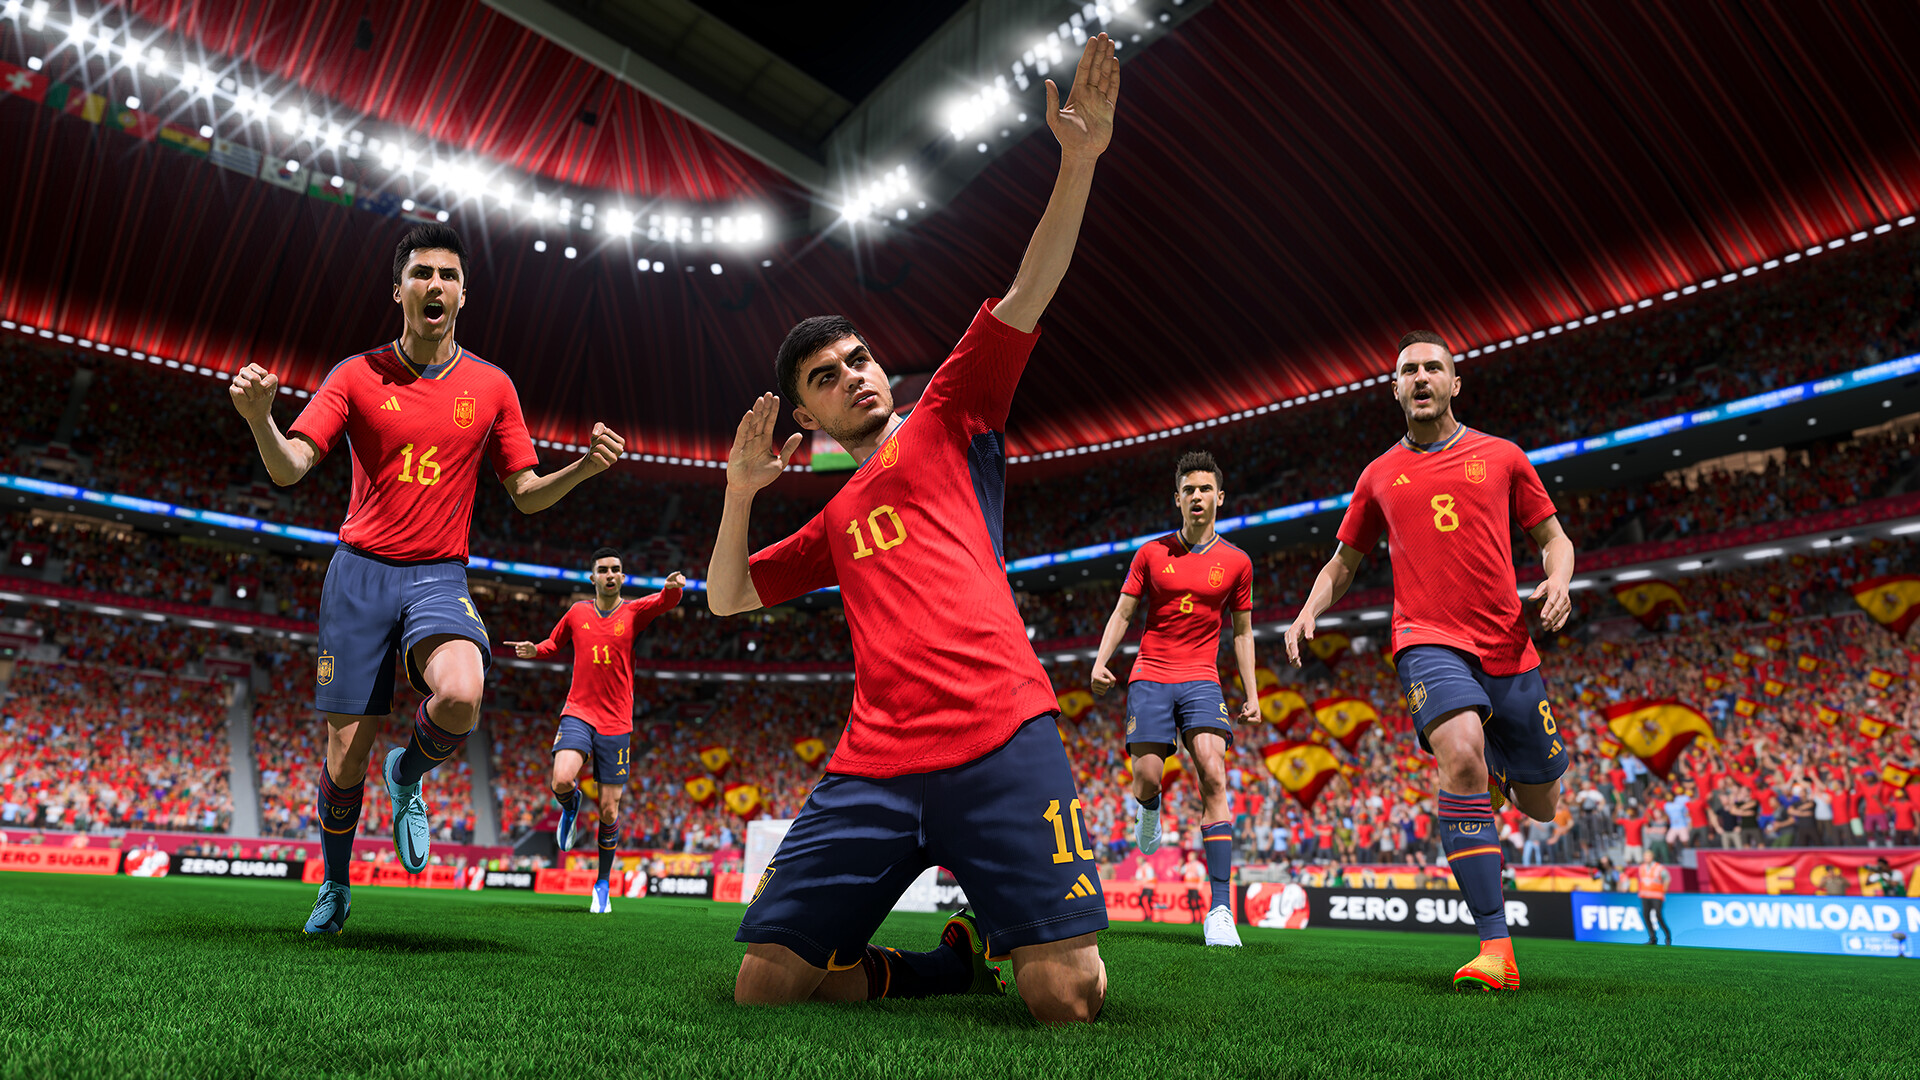 Baixar a última versão do FIFA 22 para PC grátis em Português no